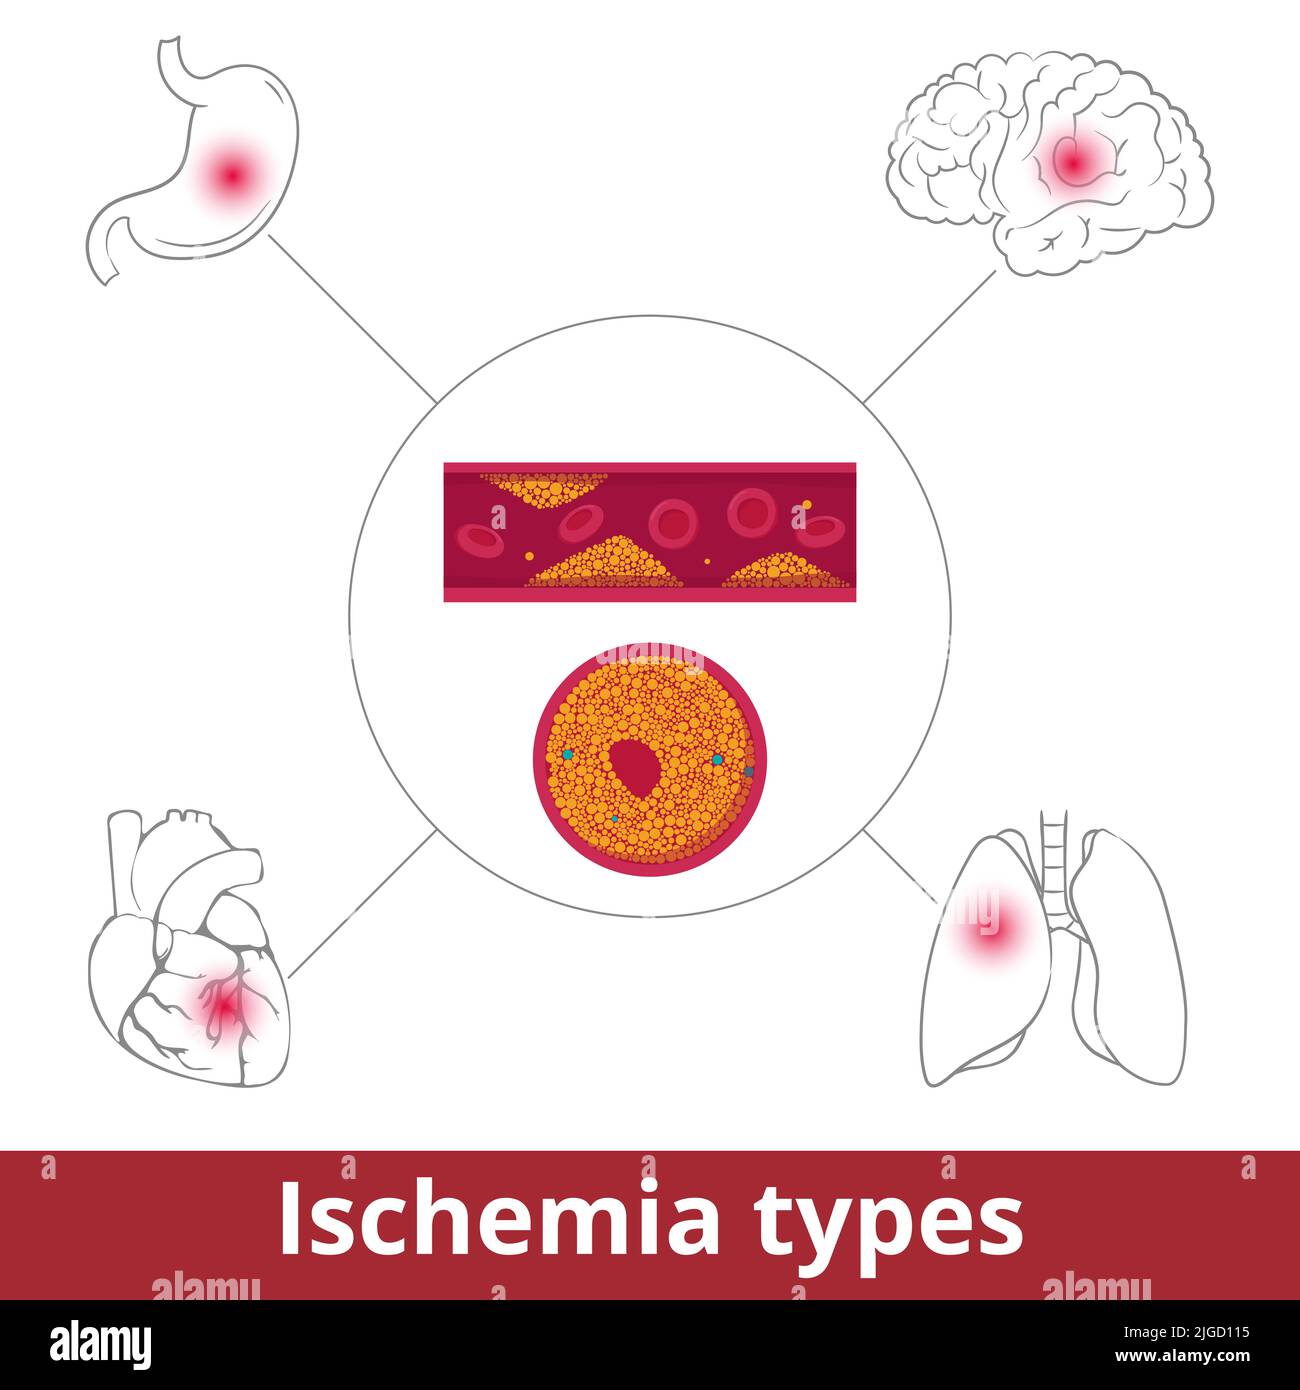 Ischämie-Typen. Visualisierung der Einschränkung der Blutversorgung durch Probleme mit Blutgefäßen aufgrund von Vasokonstriktion, Thrombose oder Embolie. Stock Vektor